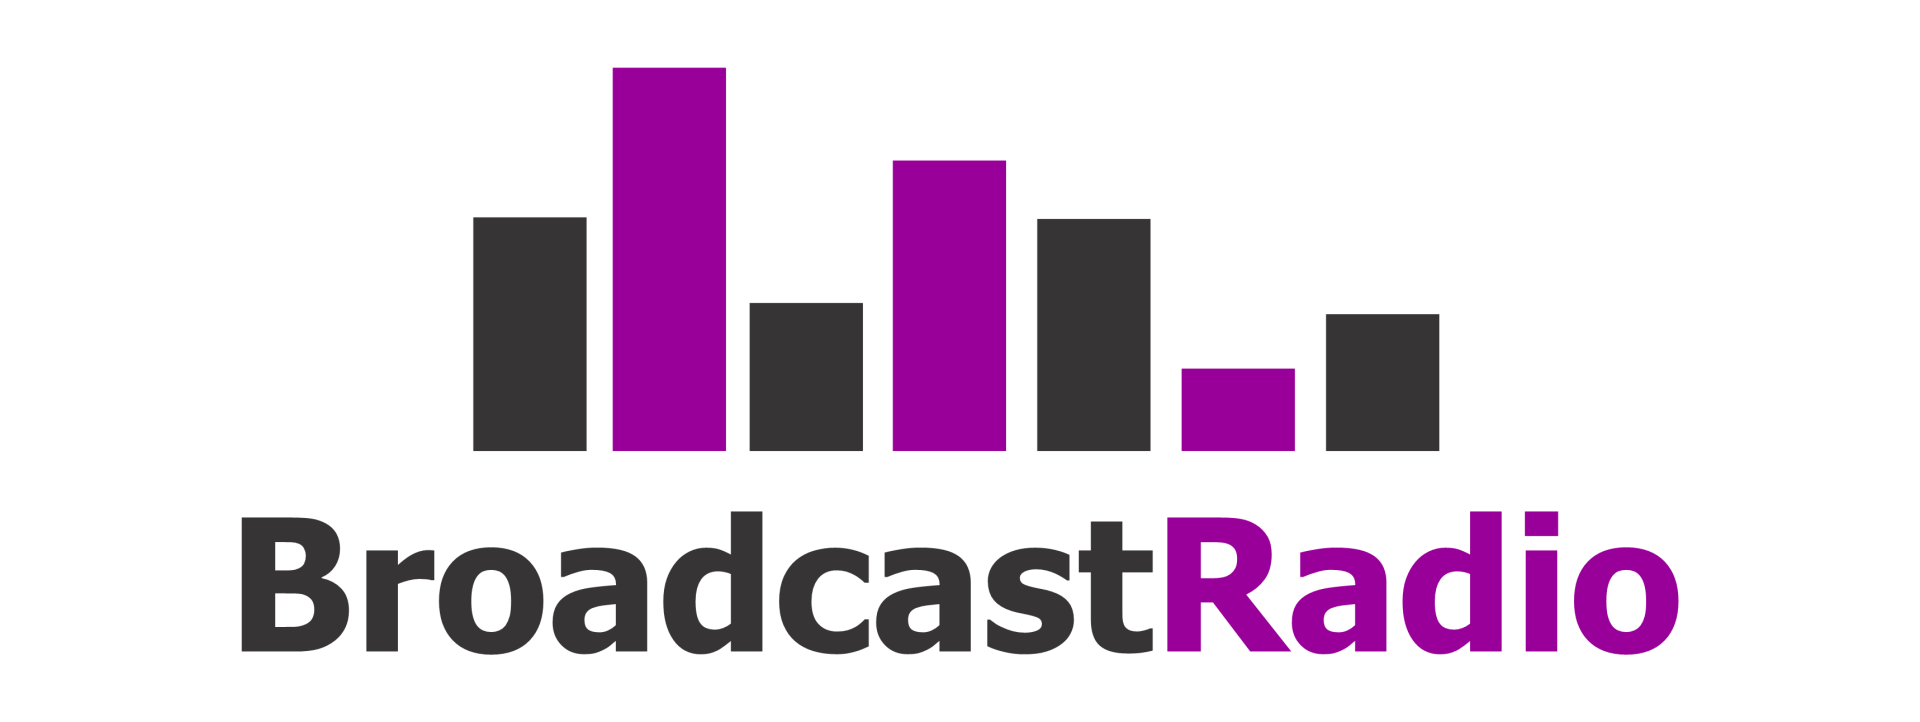 Broadcast Radio Logo